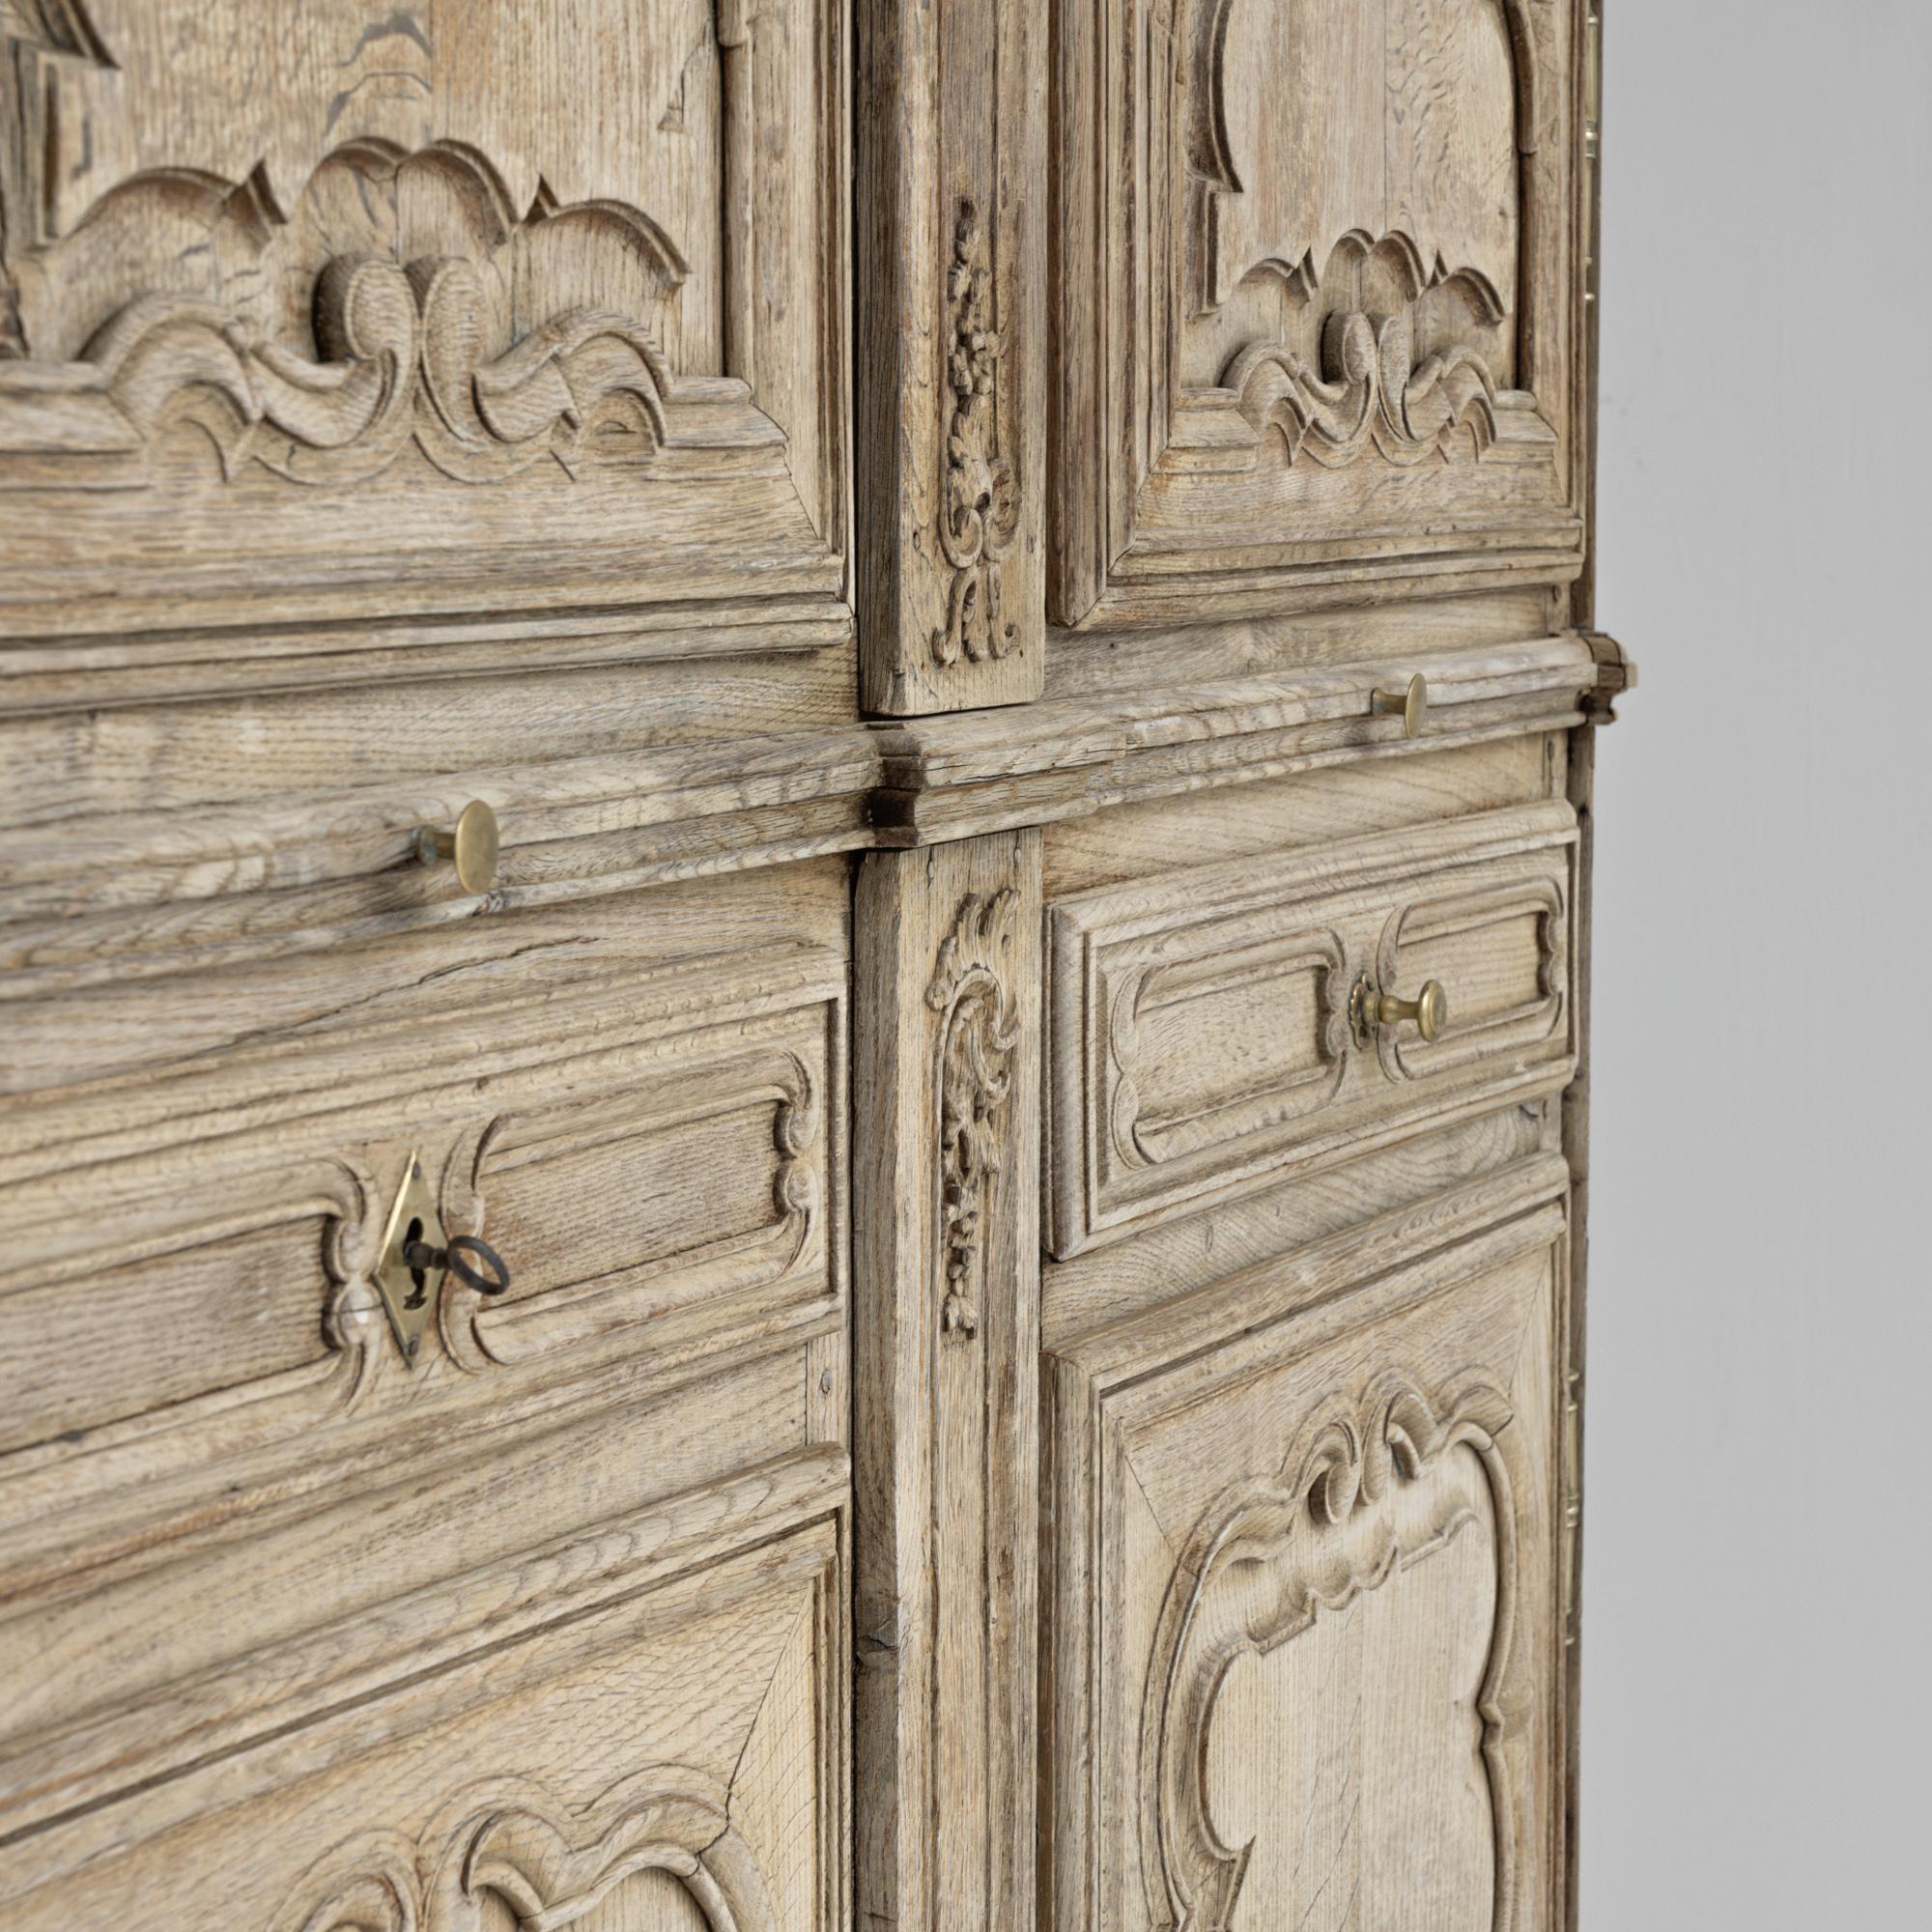 Dieser französische Kleiderschrank aus gebleichter Eiche aus den 1800er Jahren ist ein wahres Meisterwerk der Handwerkskunst und Raffinesse. Die Türen sind mit kunstvoll geschnitzten Details verziert, die eine atemberaubende optische Wirkung